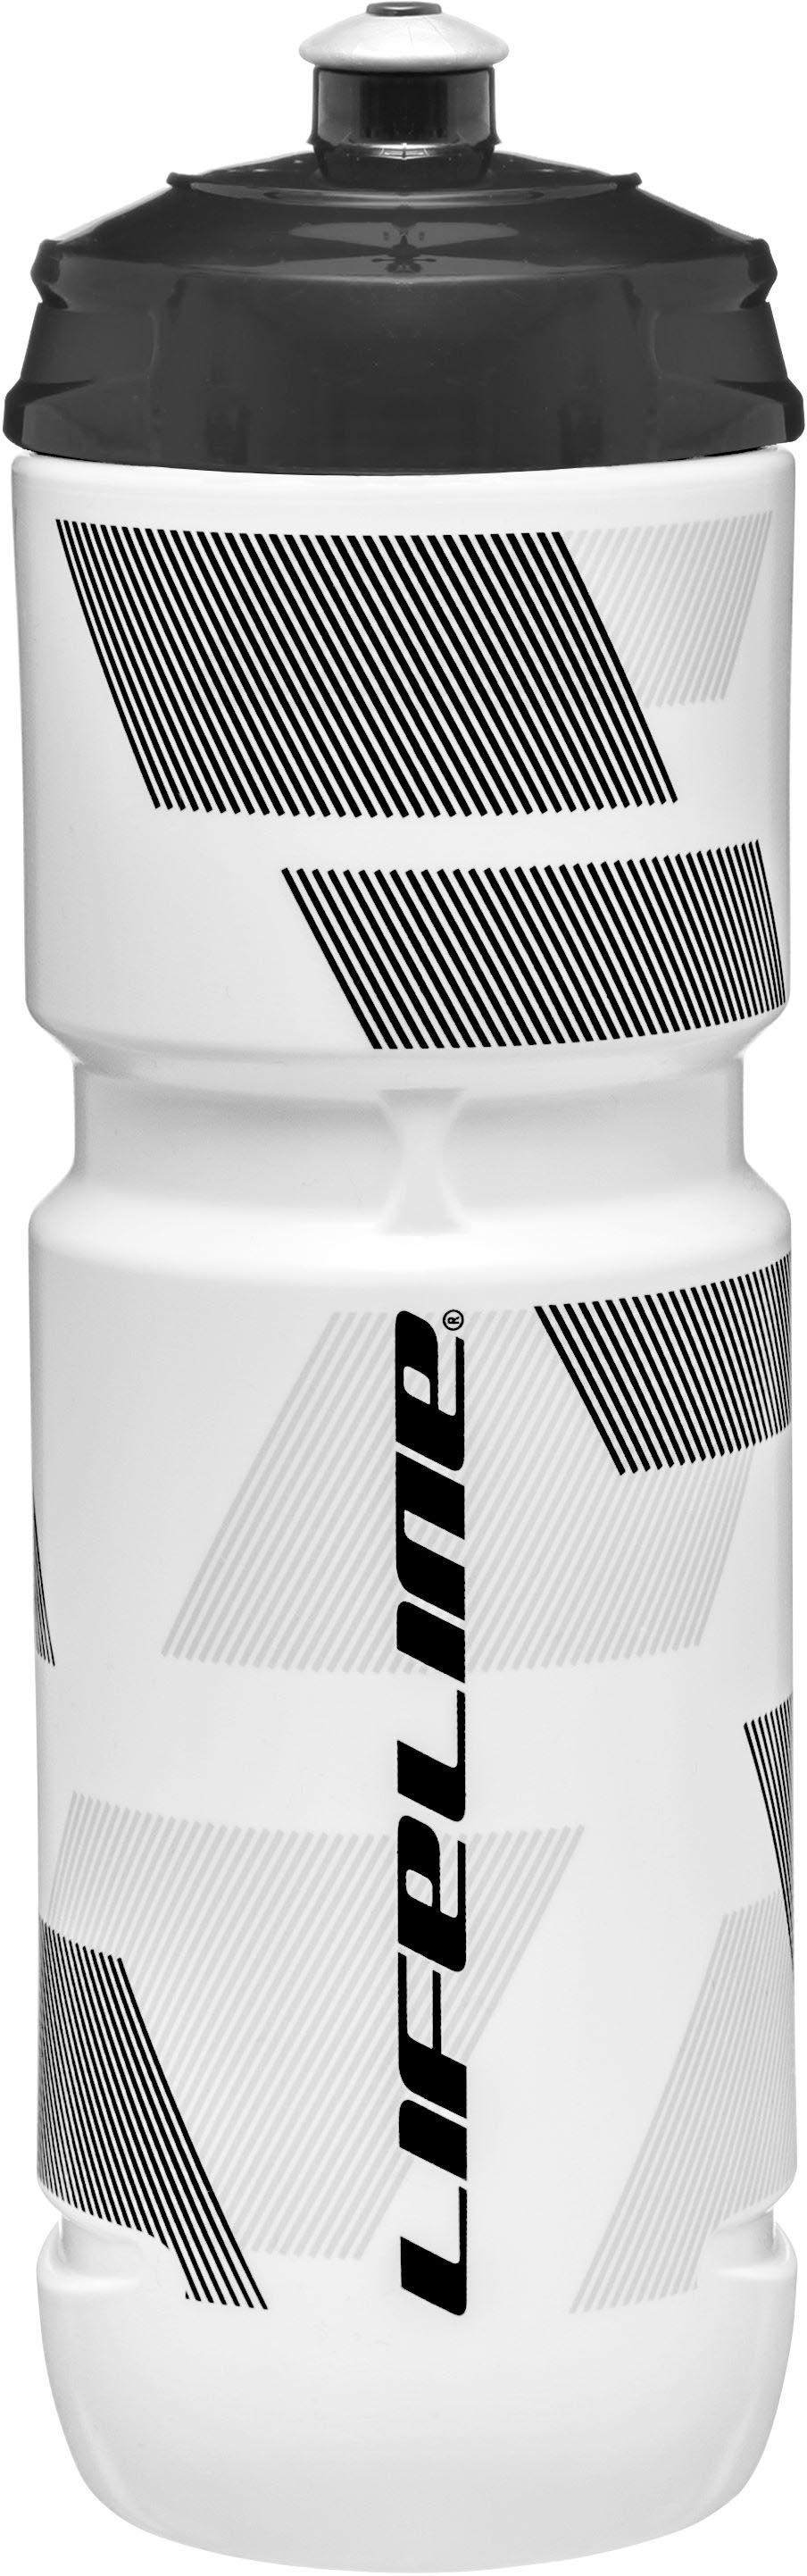 Lifeline Water Bottle 800ml - White/black